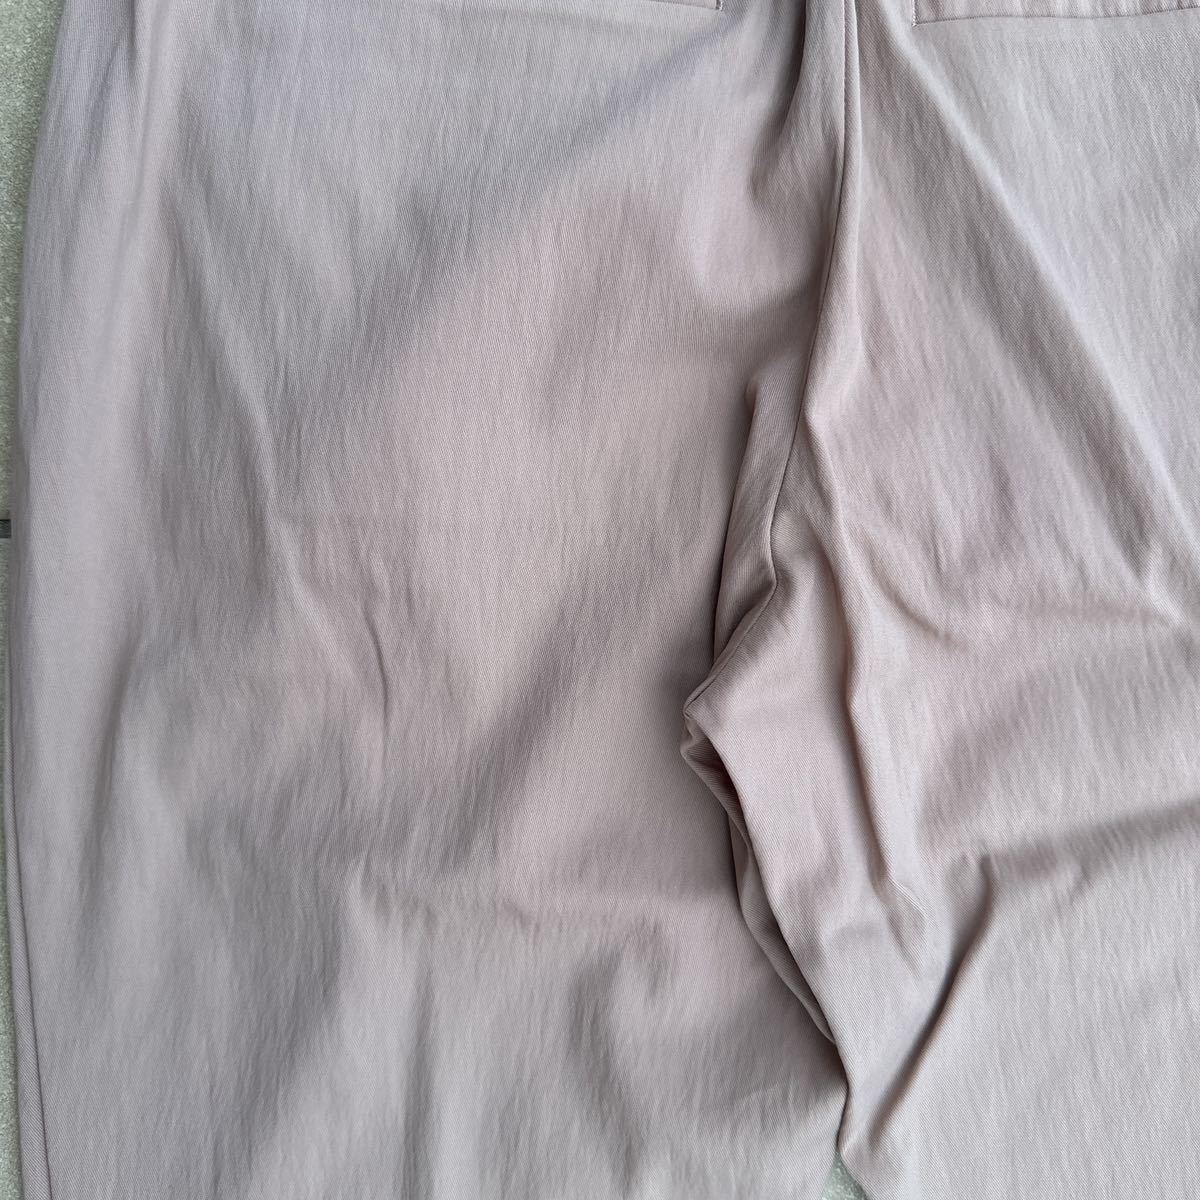  новый товар бирка не прибывший INDIVI Indivi [.... брюки ...] сирень расческа - tuck конические брюки 2021SS размер 36 бежевый обычная цена,14.850 иен 